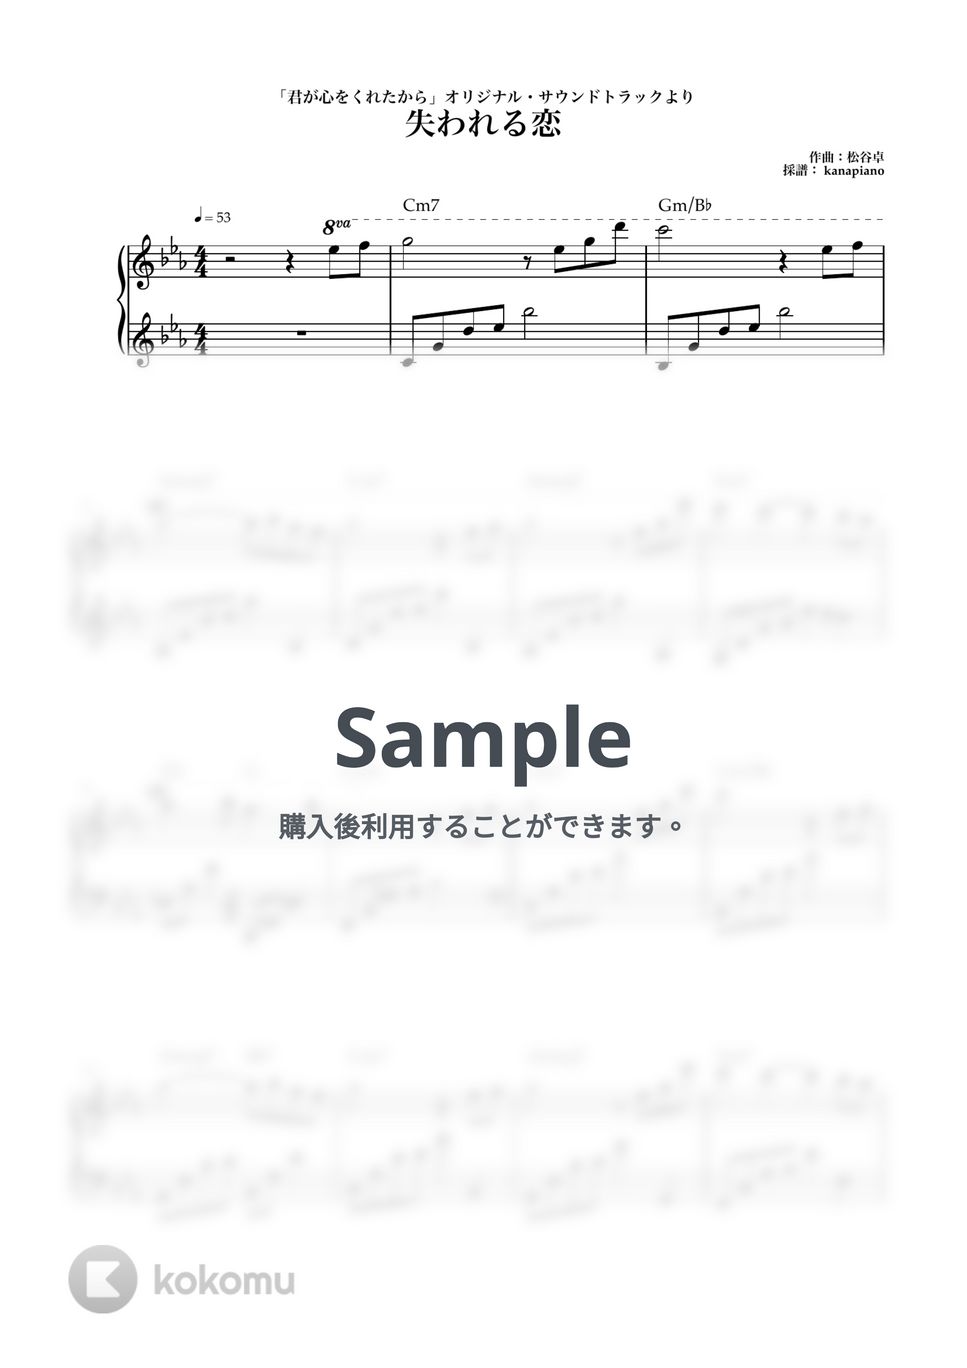 松谷卓 - 失われる恋 (ピアノ/君が心をくれたから) by kanapiano